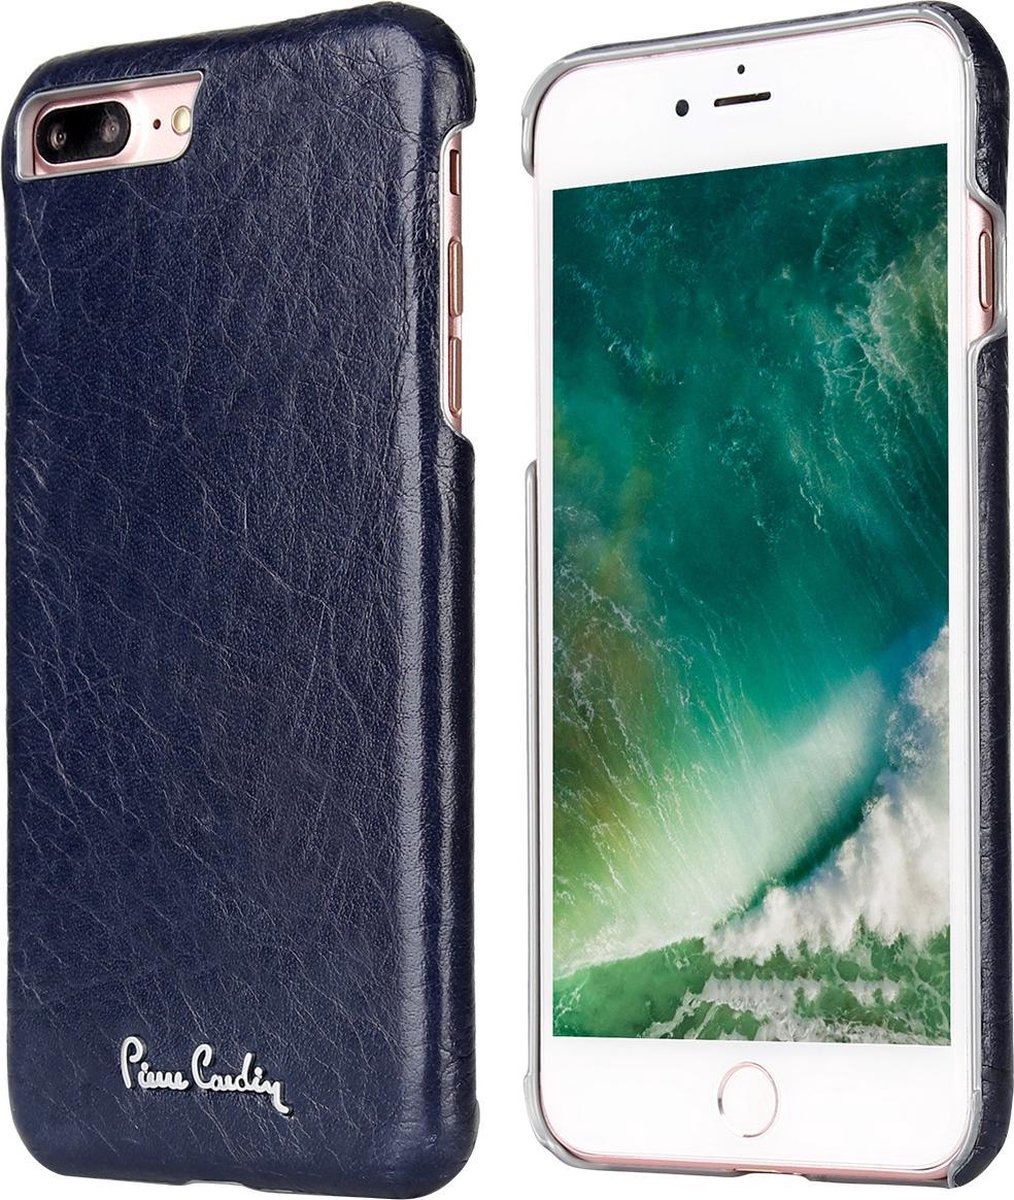 Blauw hoesje van Pierre Cardin - Backcover - Stijlvol - Leer - voor iPhone 7-8 Plus - Luxe cover